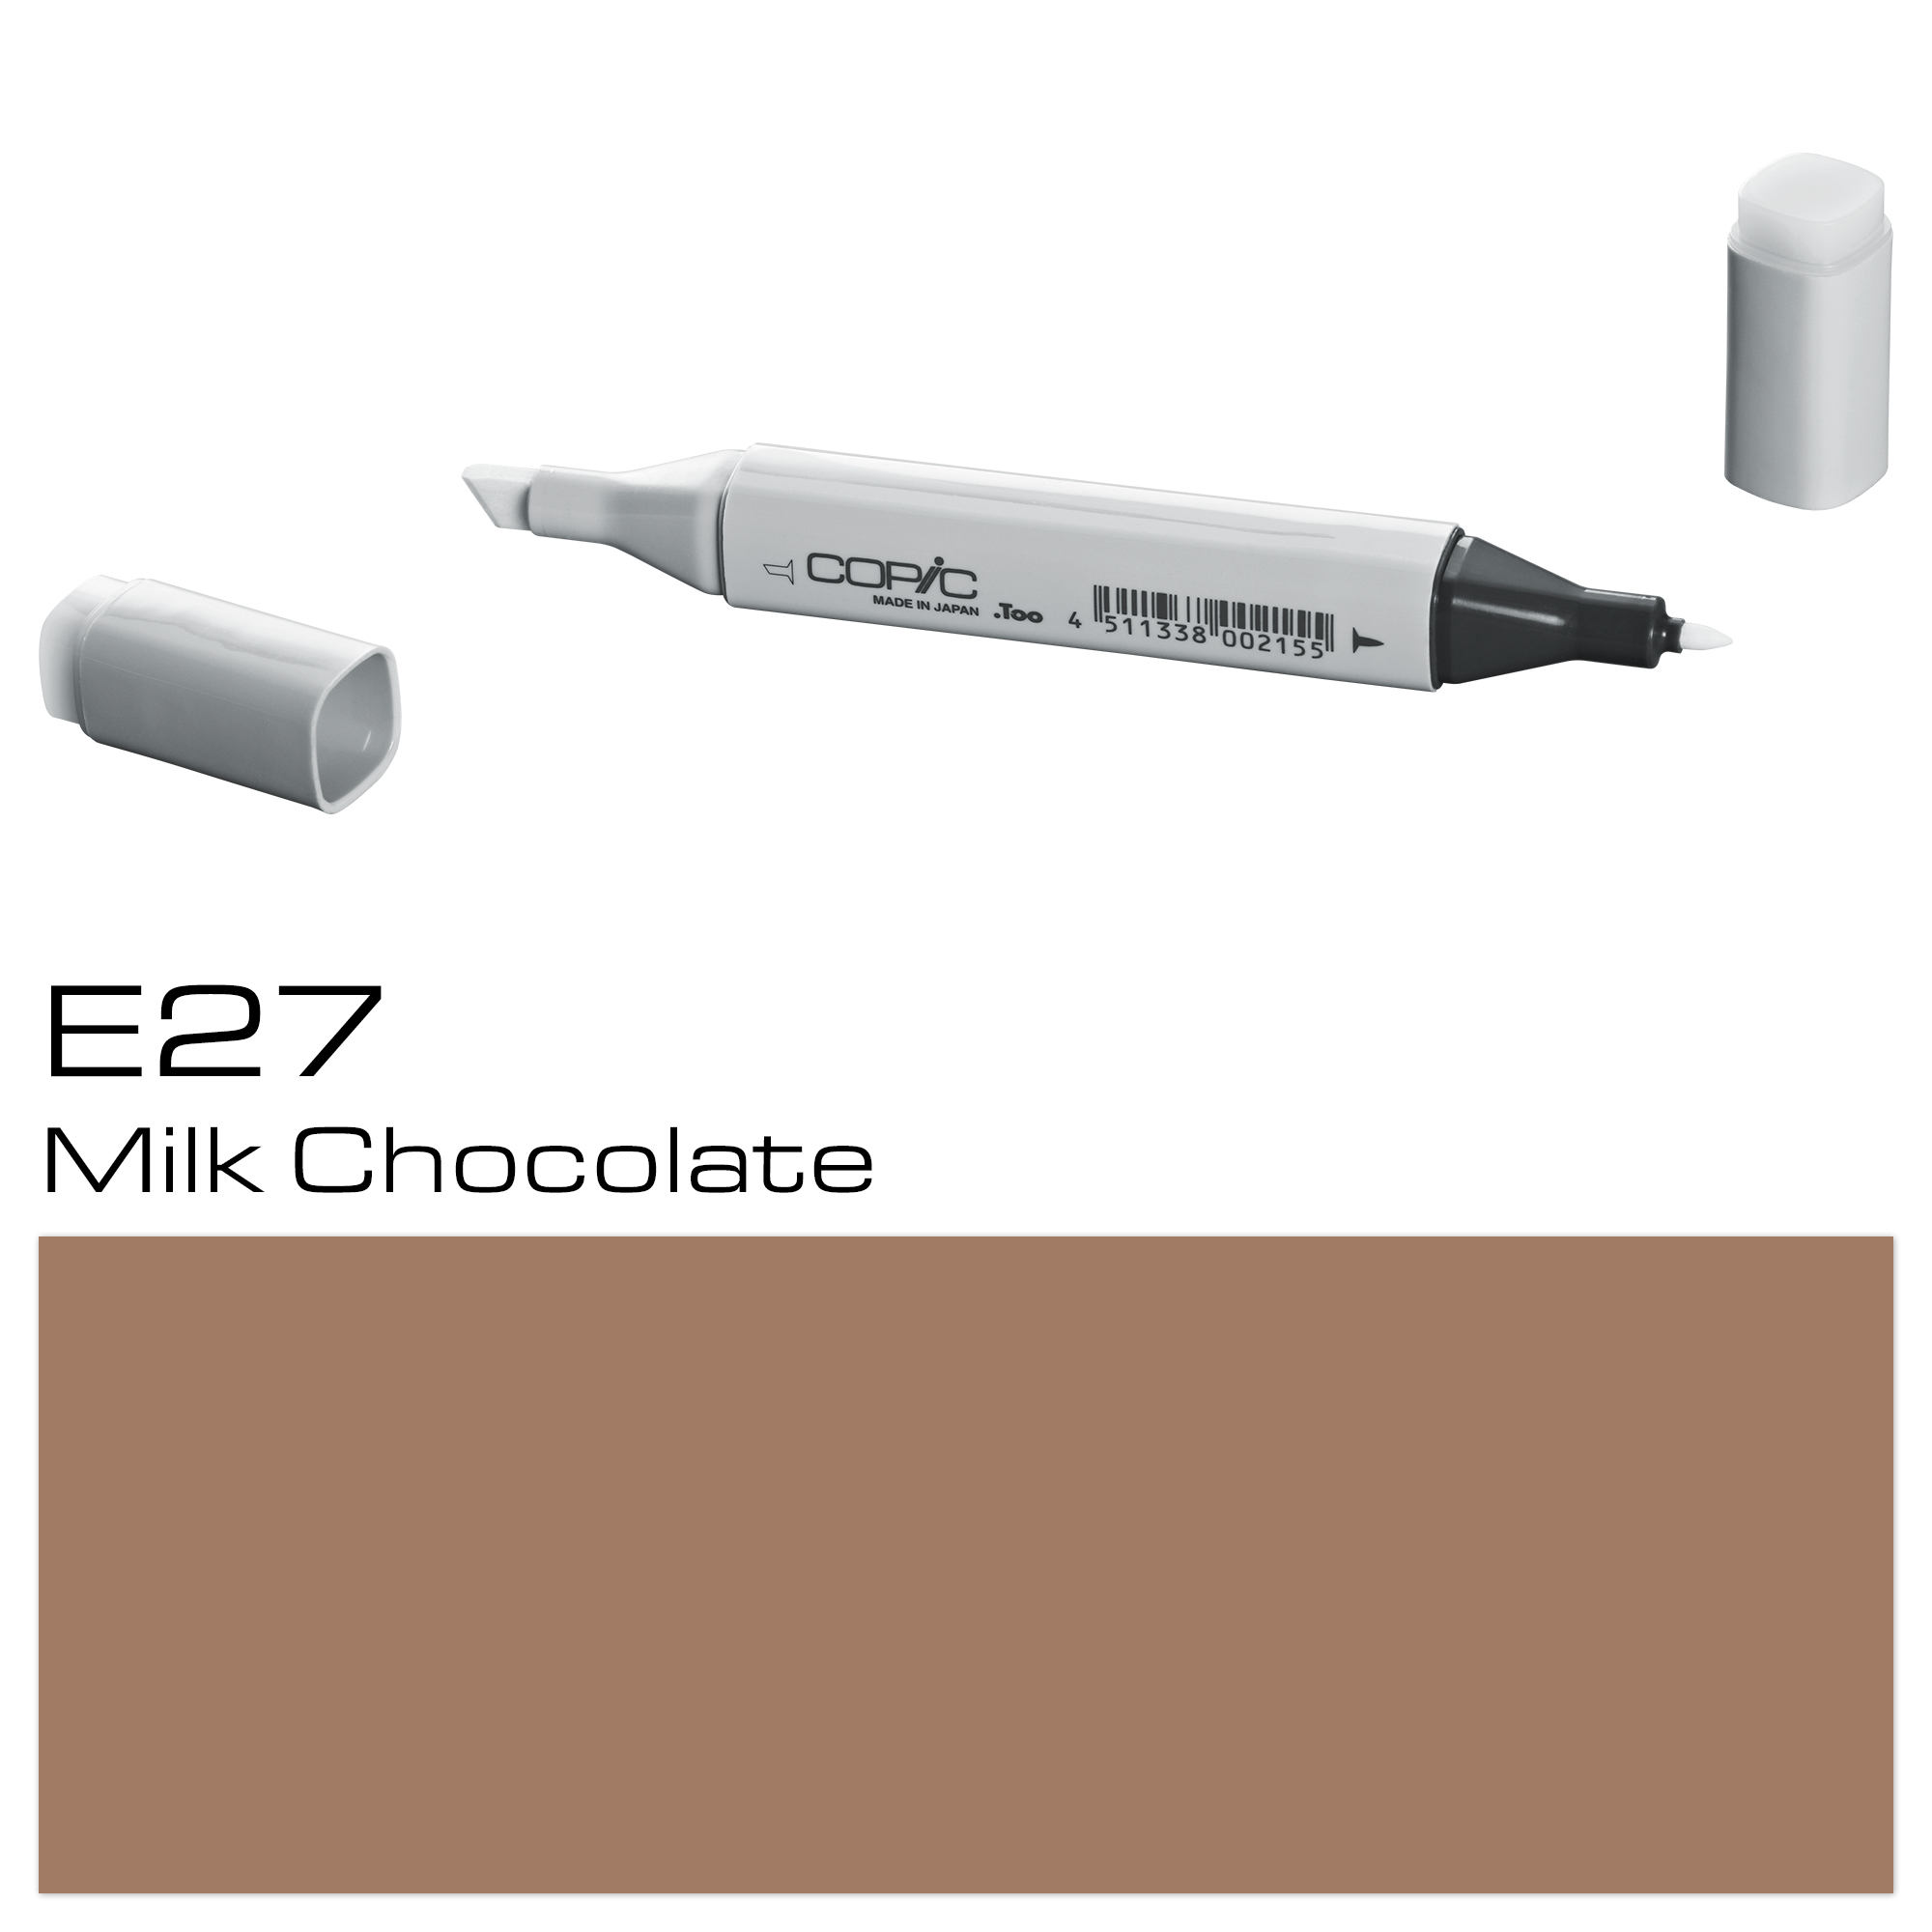 COPIC MARKER MILK CHOCOLATE E27